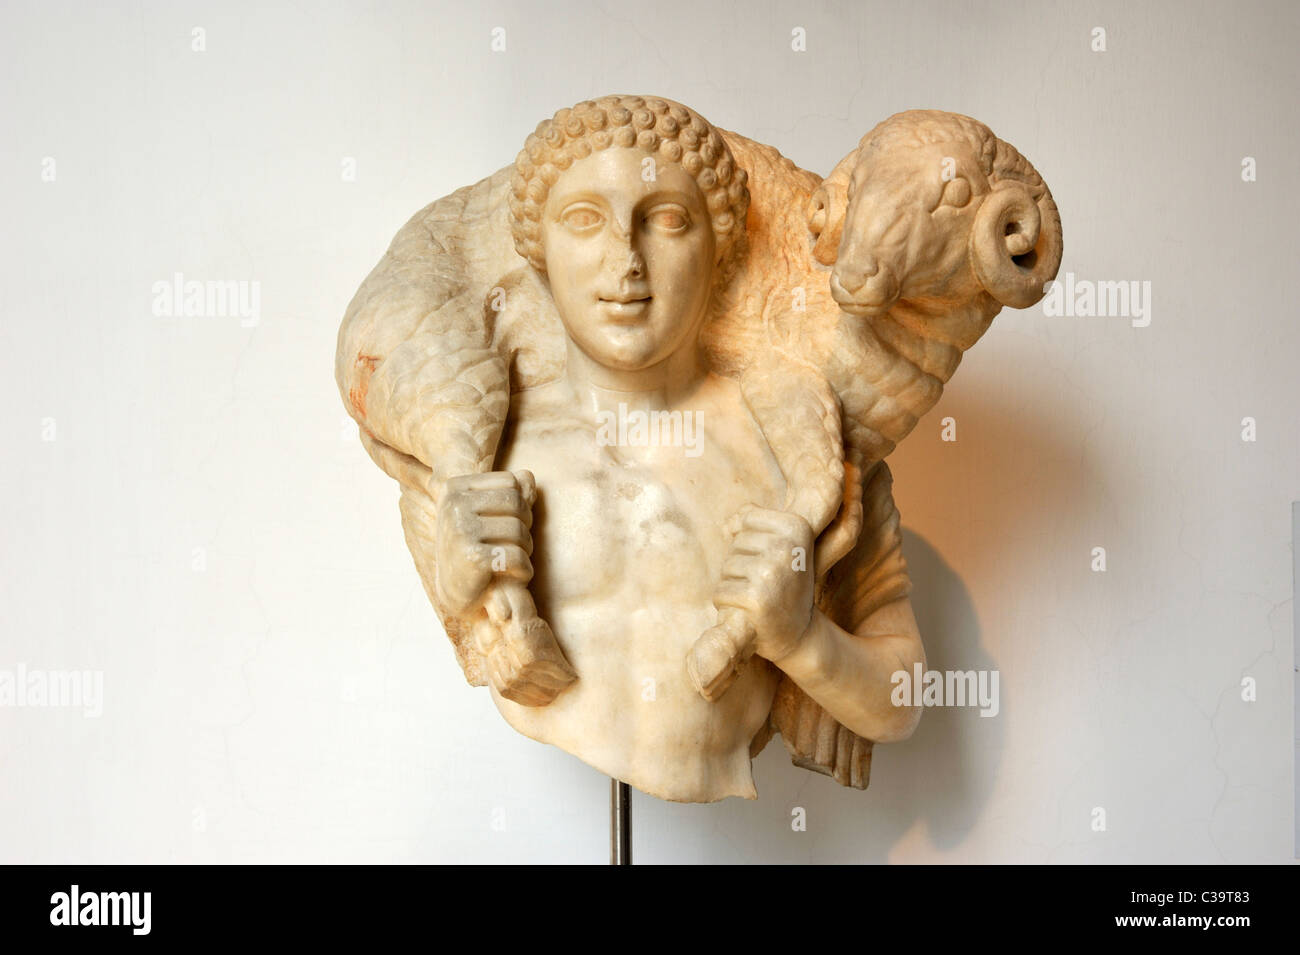 Italie, Rome, Museo di Scultura Antica Giovanni Barracco, musée de sculpture ancienne, statue romaine d'Hermès, 1e siècle av. J.-C. Banque D'Images